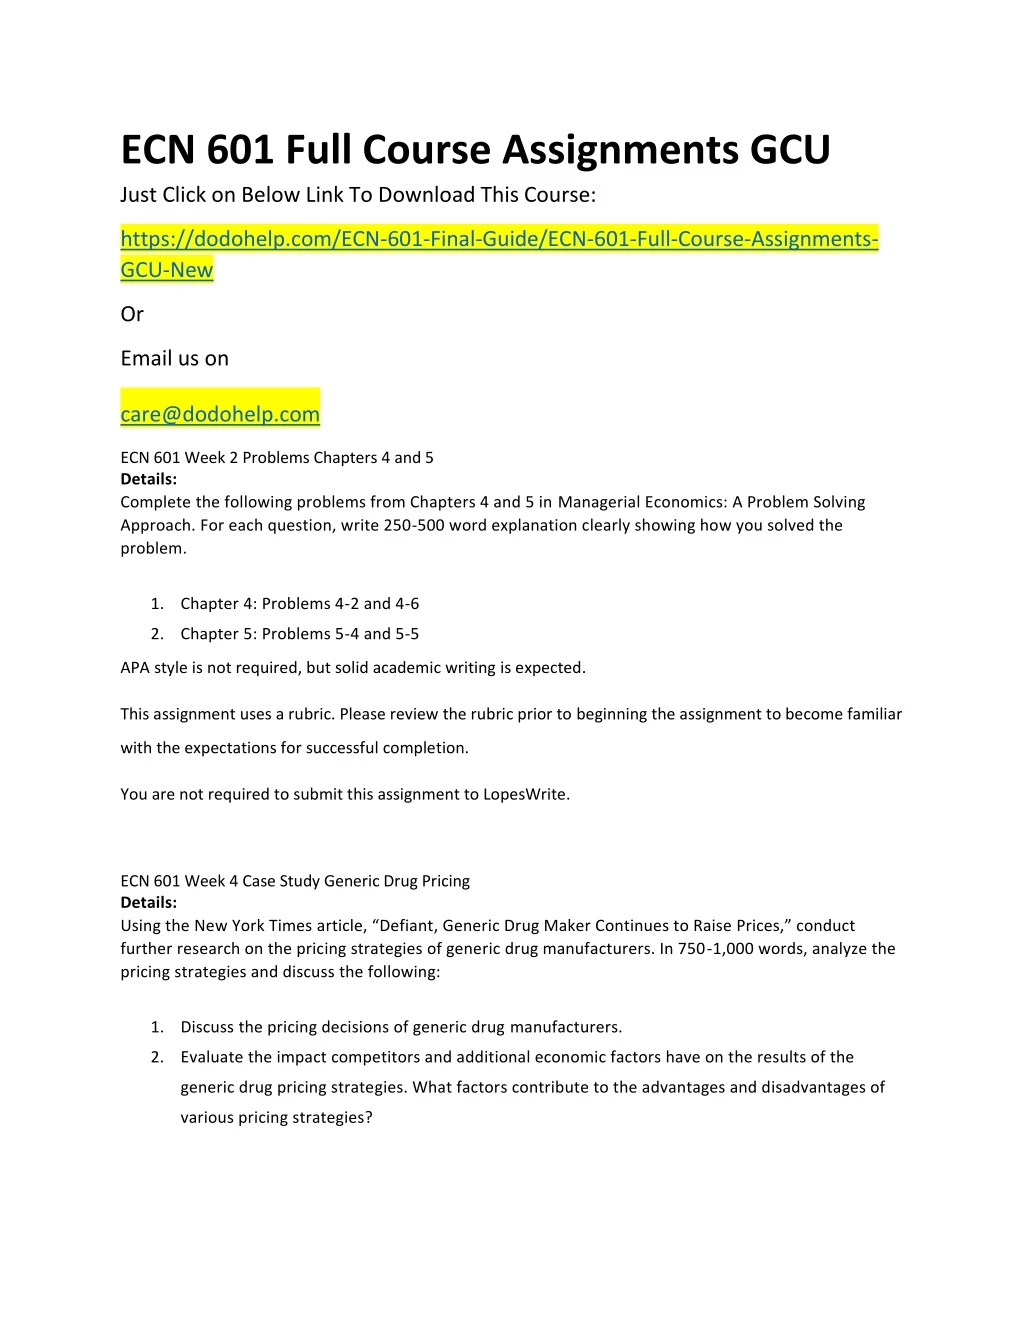 ecn 601 full course assignments gcu just click